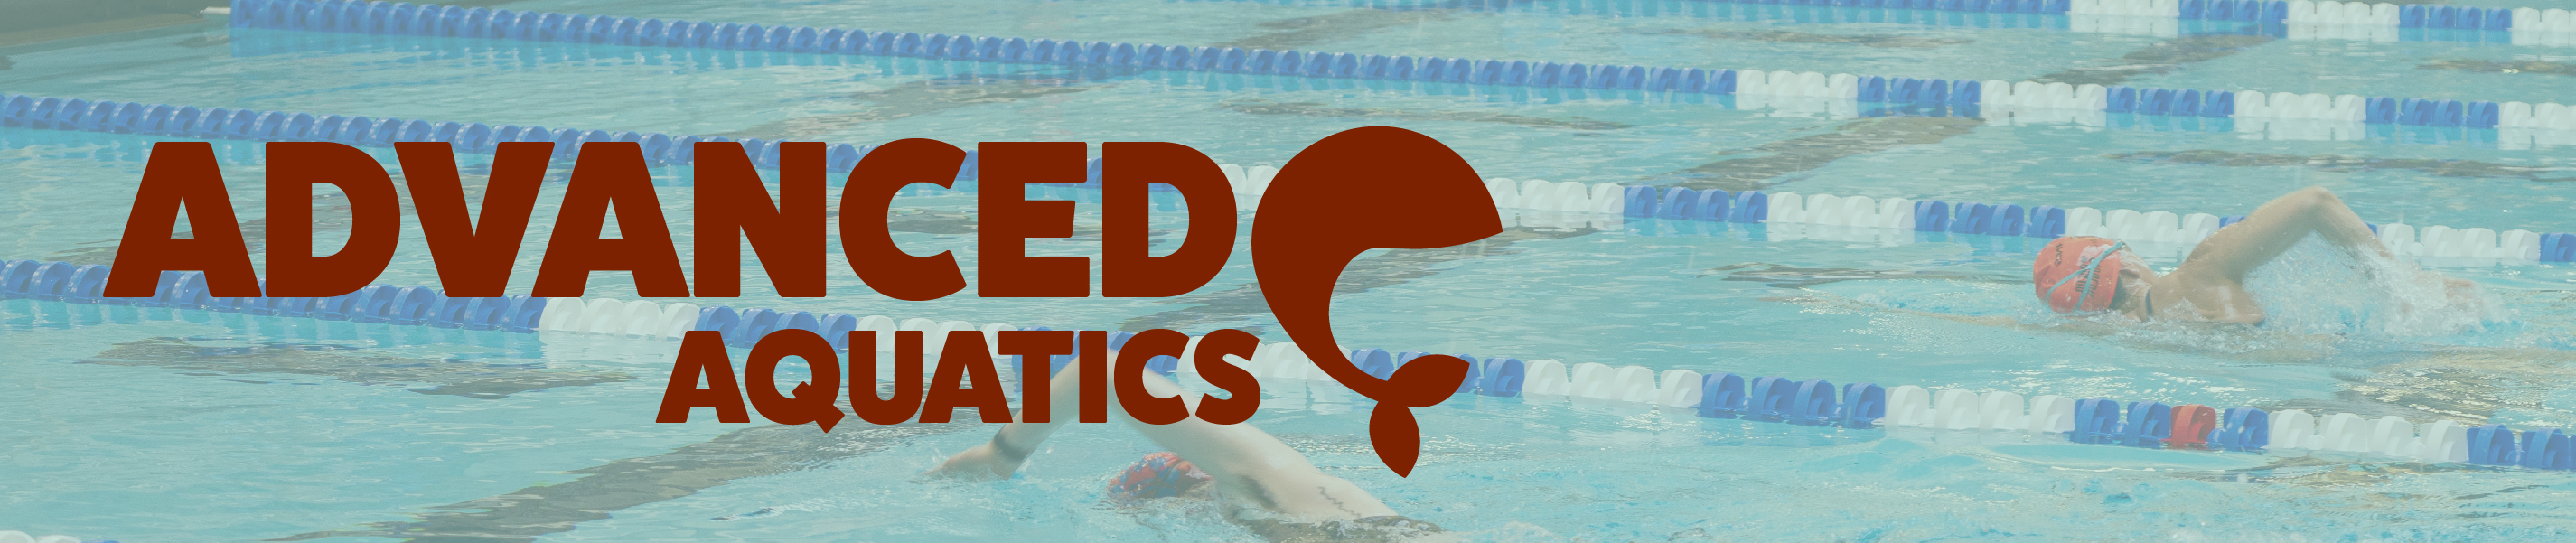 Pool lanes with text "Advanced Aquatics"